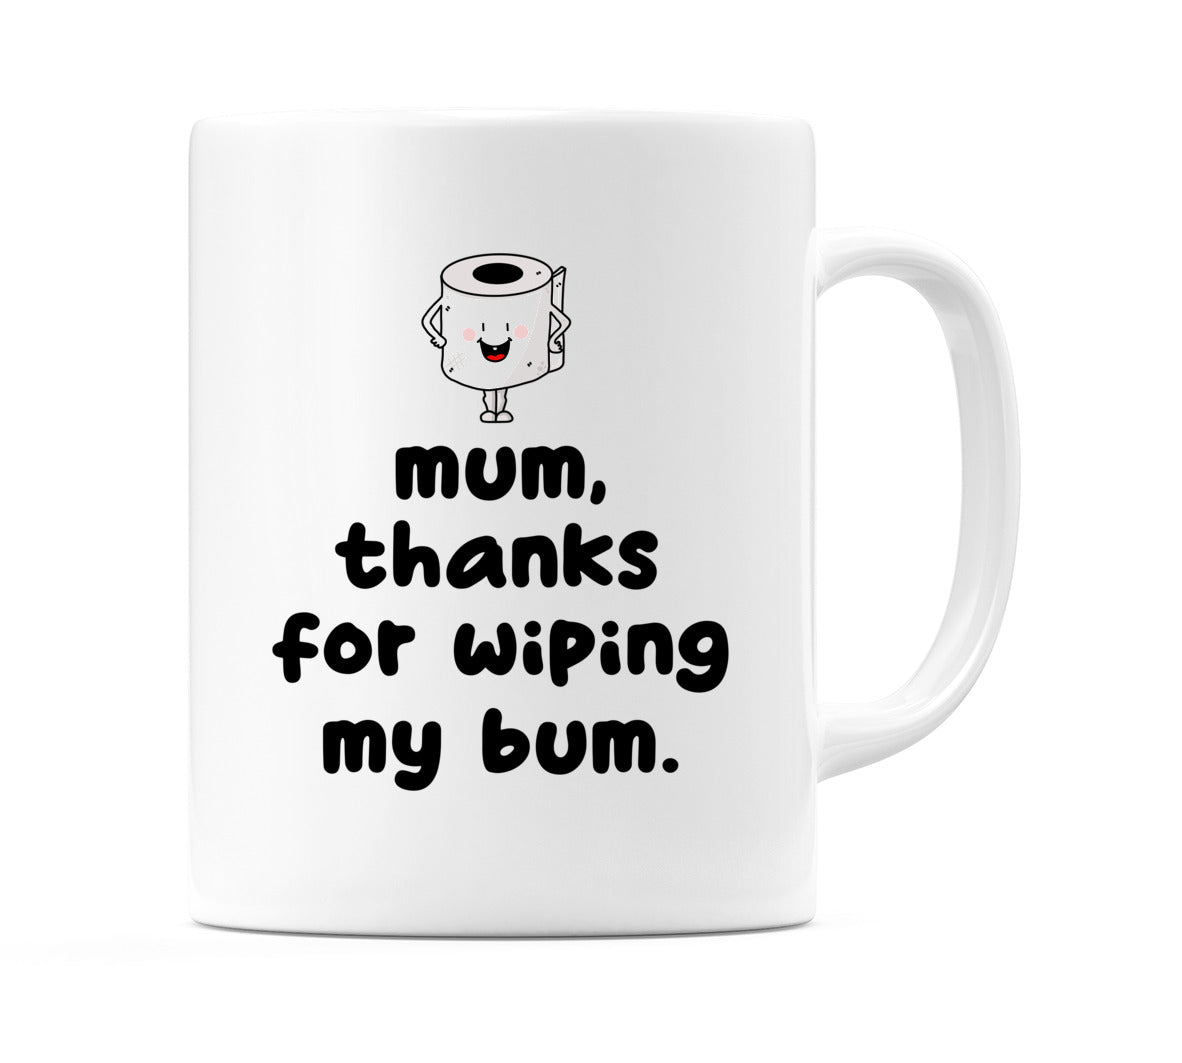 Mum, thanks for wiping my bum. Mug